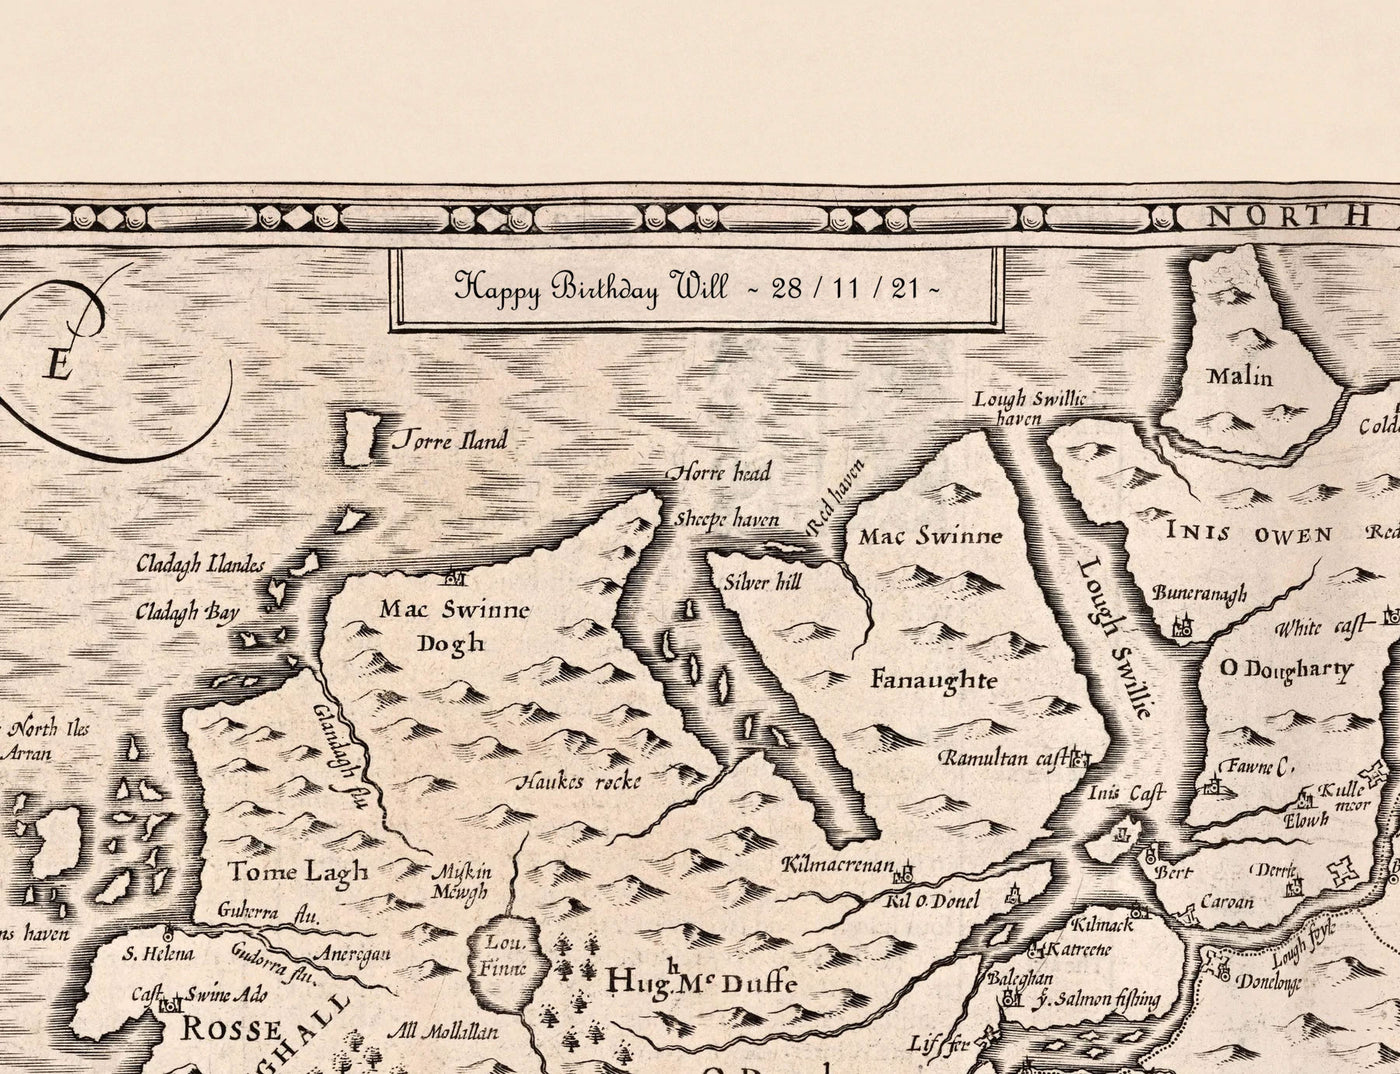 Alte Karte von Covent Garden, 1720 von Strype Stow - London, St Paul's Church, King Street, Strand, West End